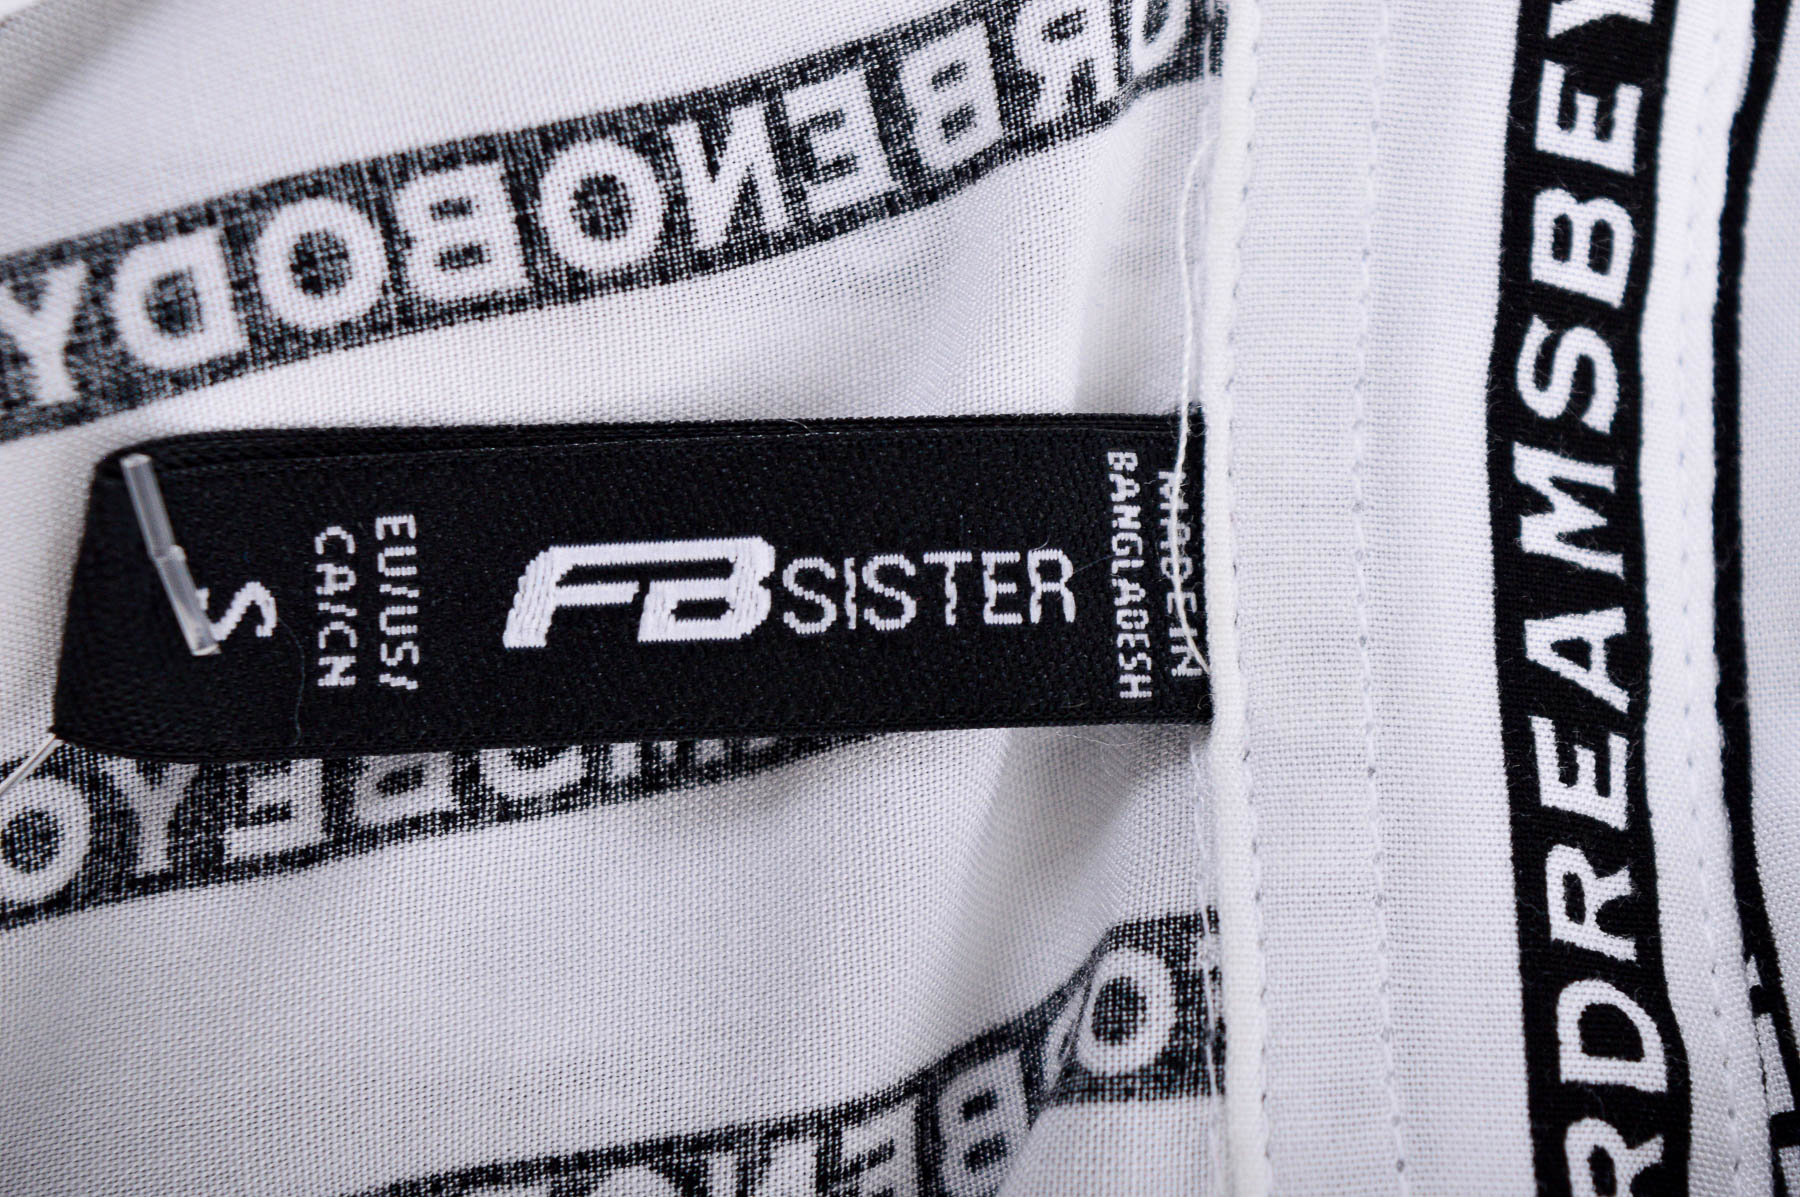 Дамска риза - FB Sister - 2